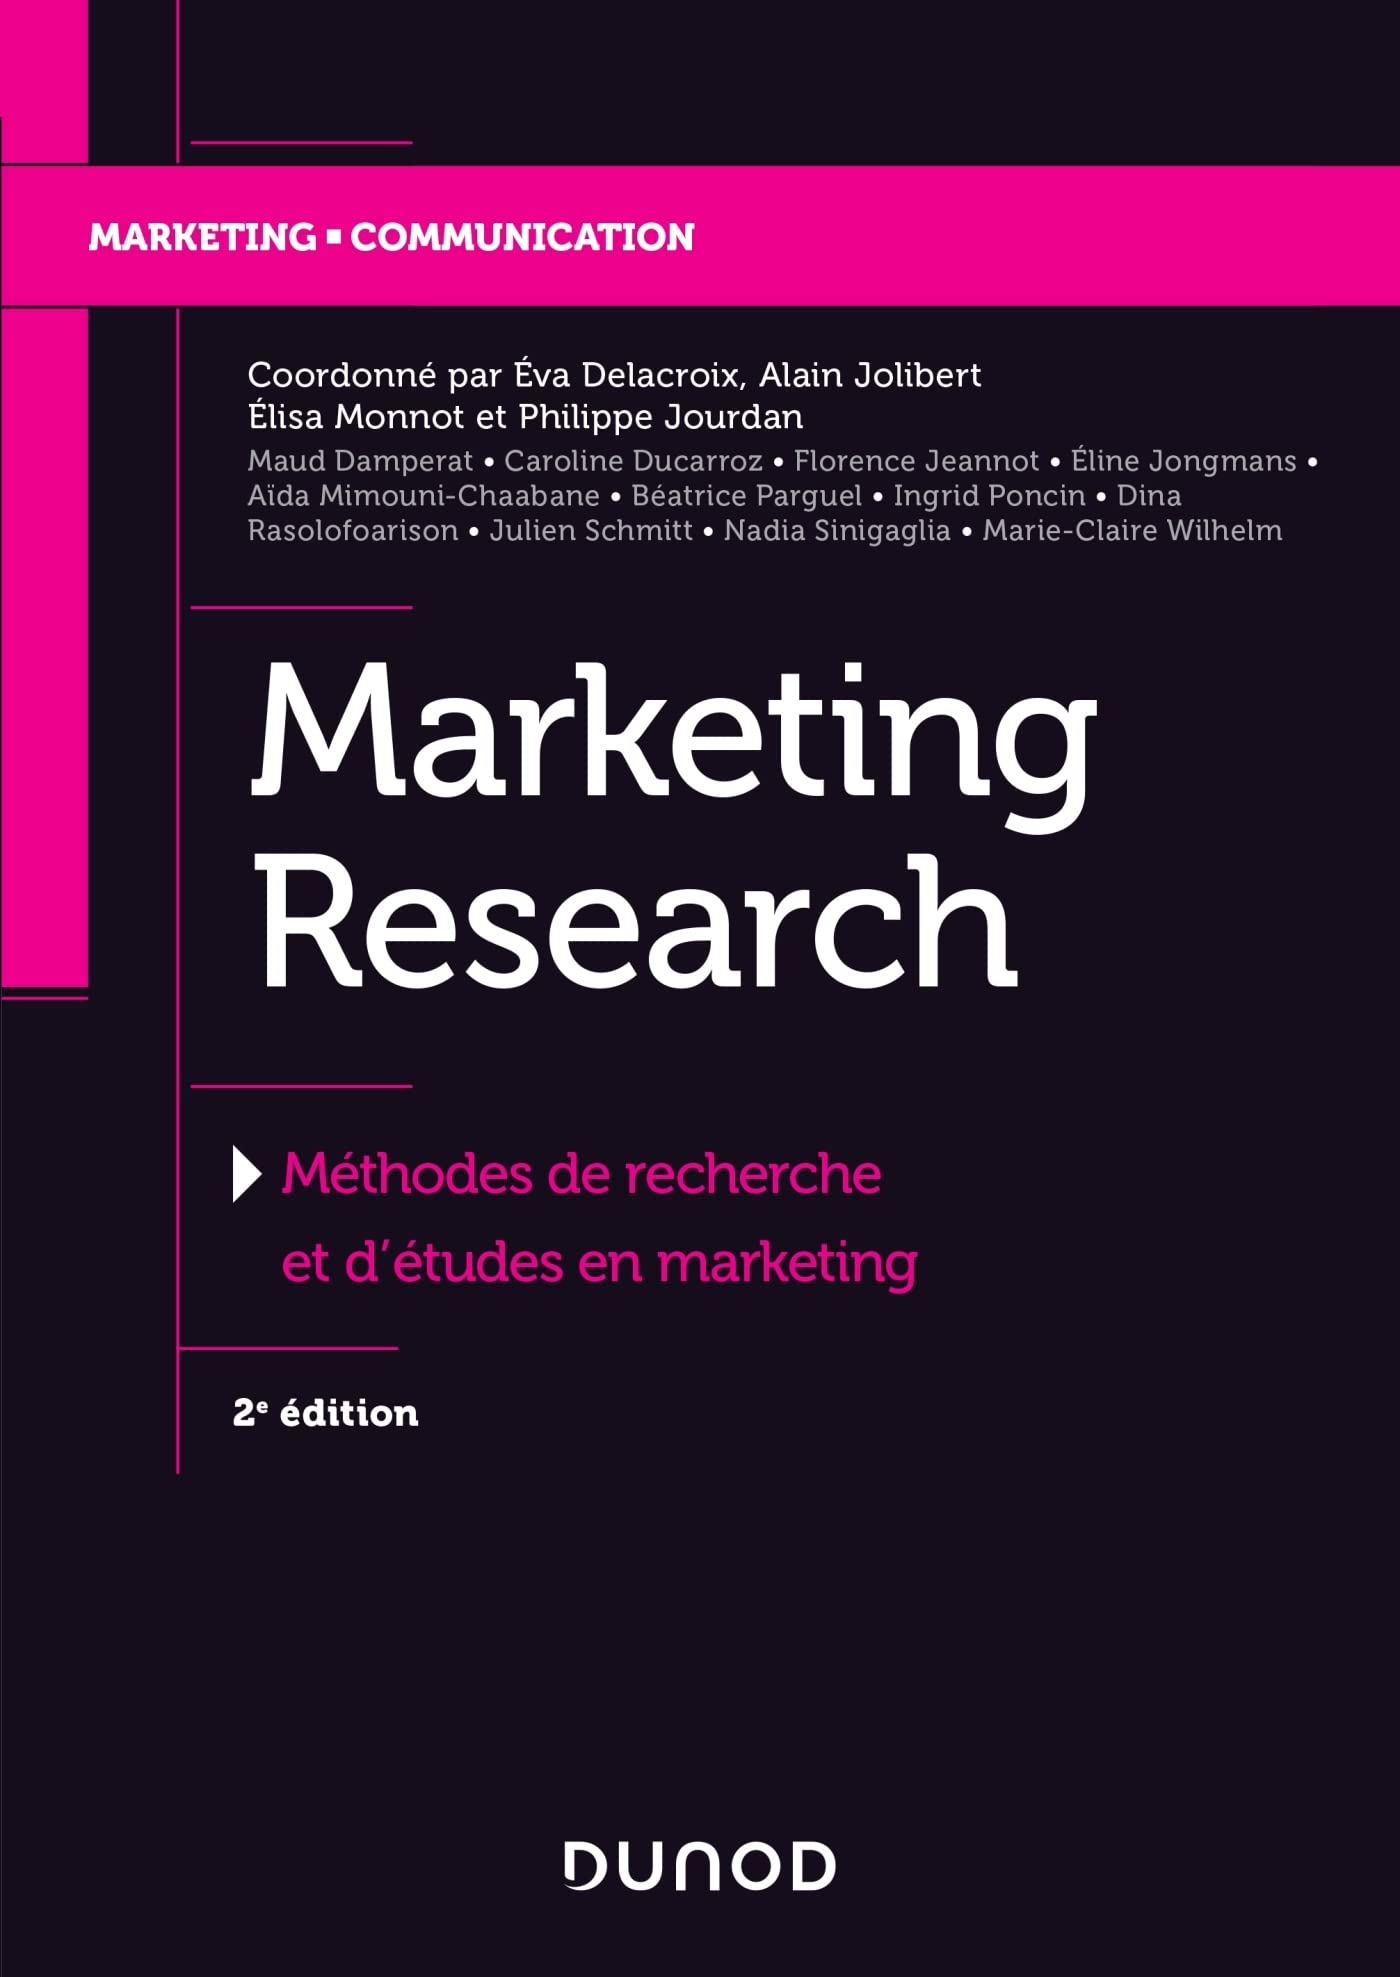 Marketing Research - 2e éd. - Méthodes de recherche et d'études en marketing: Méthodes de recherche et d'études en marketing